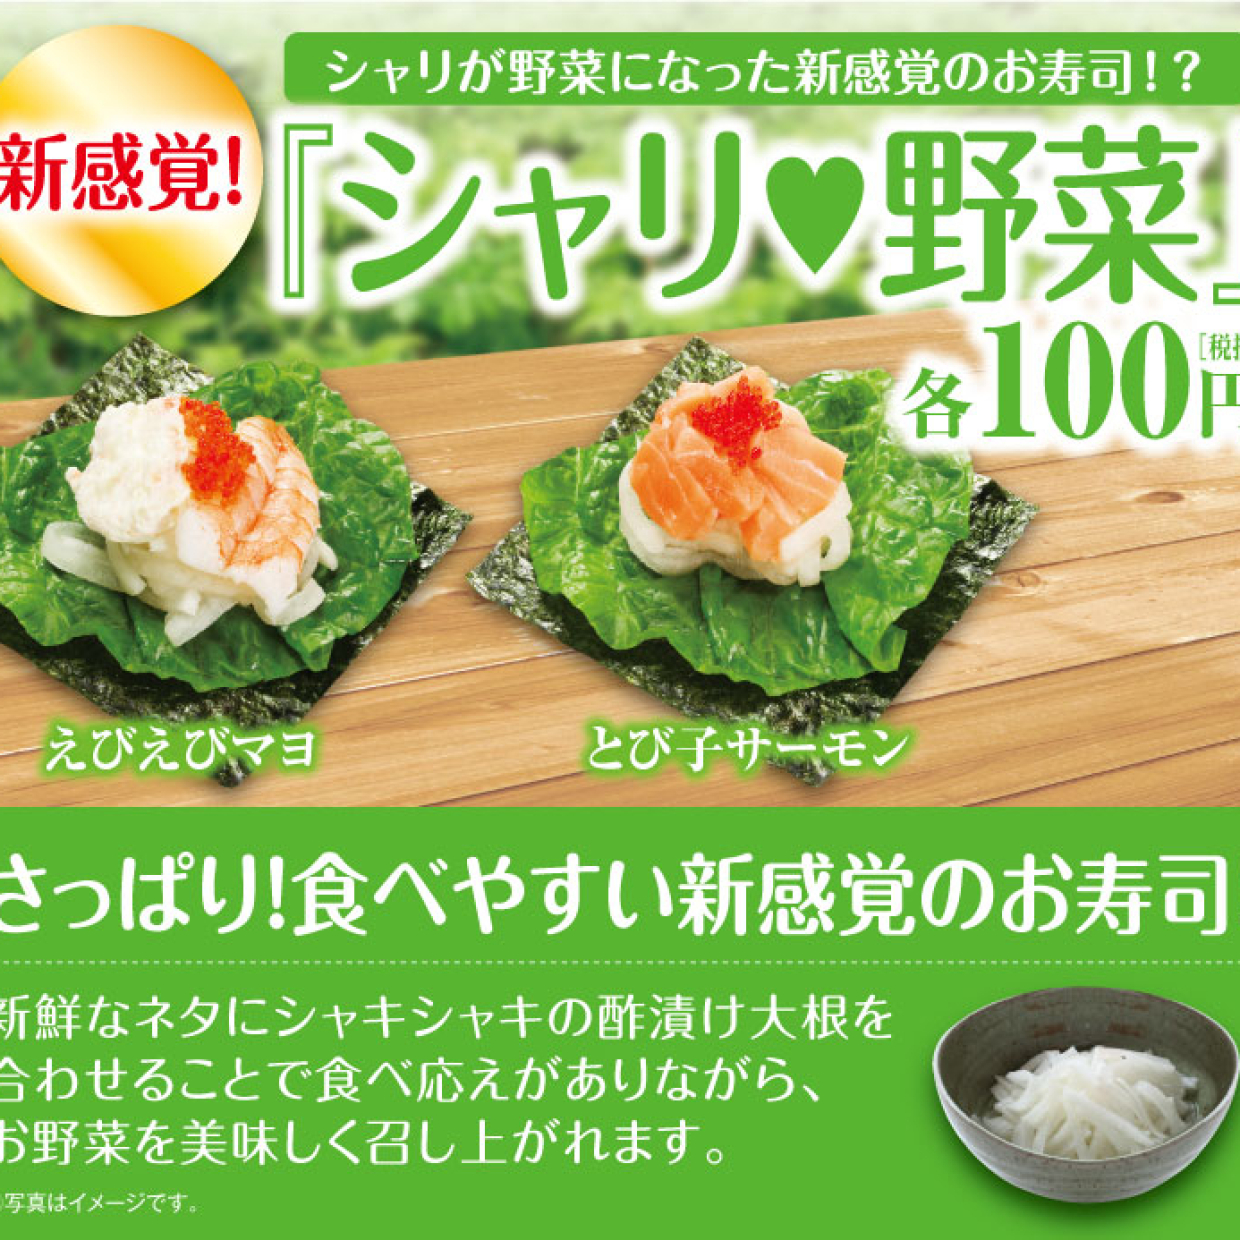  シャリが野菜！？【くら寿司】の低糖質メニューが予想の斜め上すぎるものだった！ 